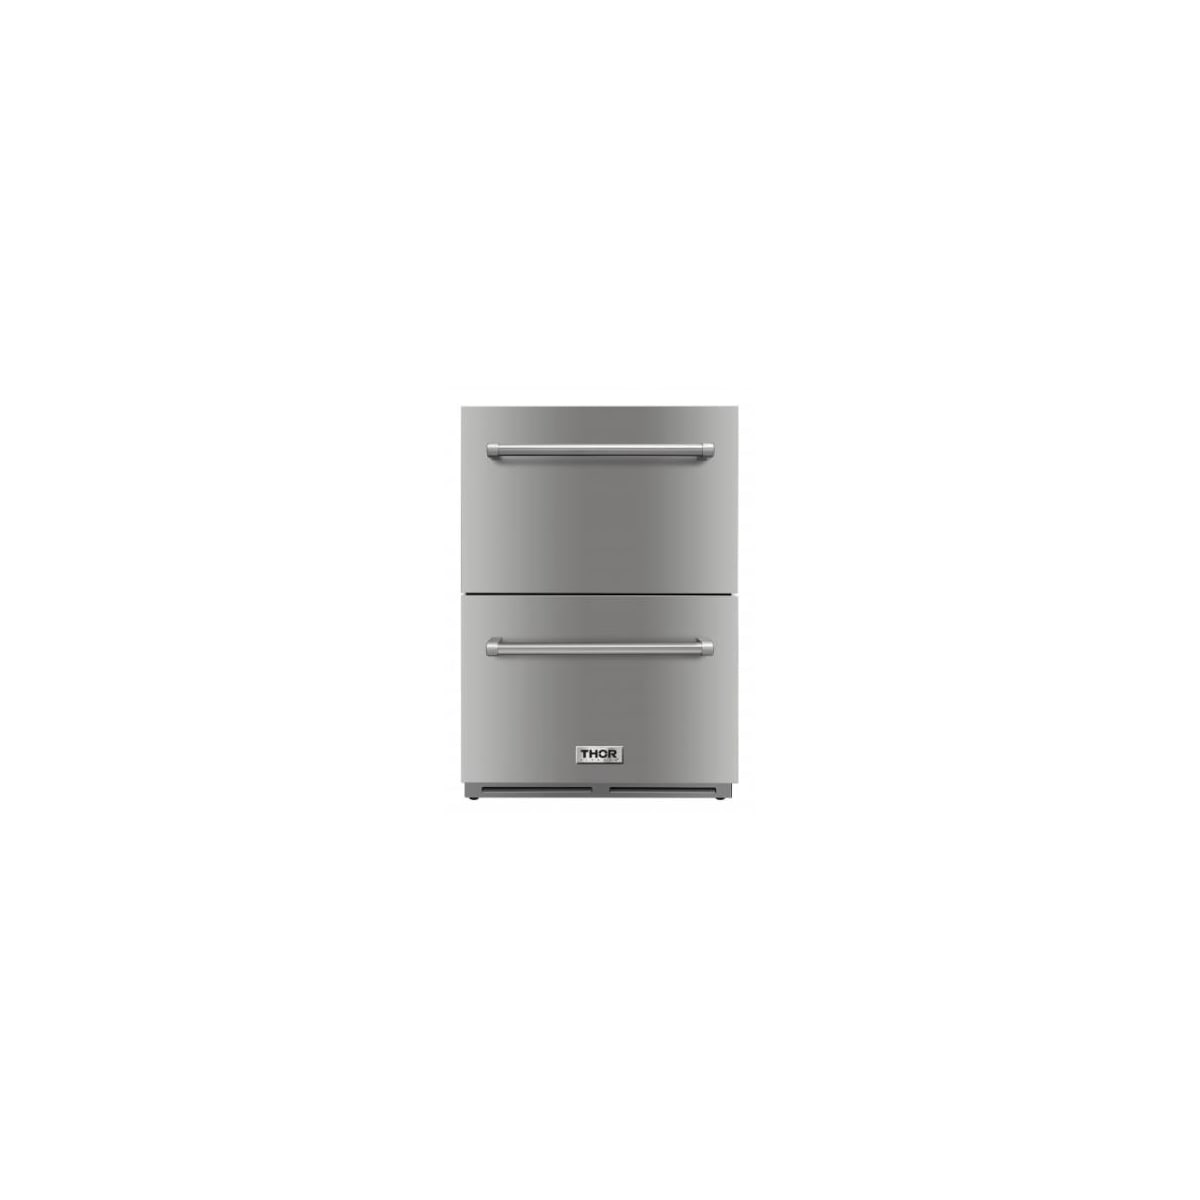 Thor Kitchen 24 Undercounter Drawer Refrigerator (TRF2401U)